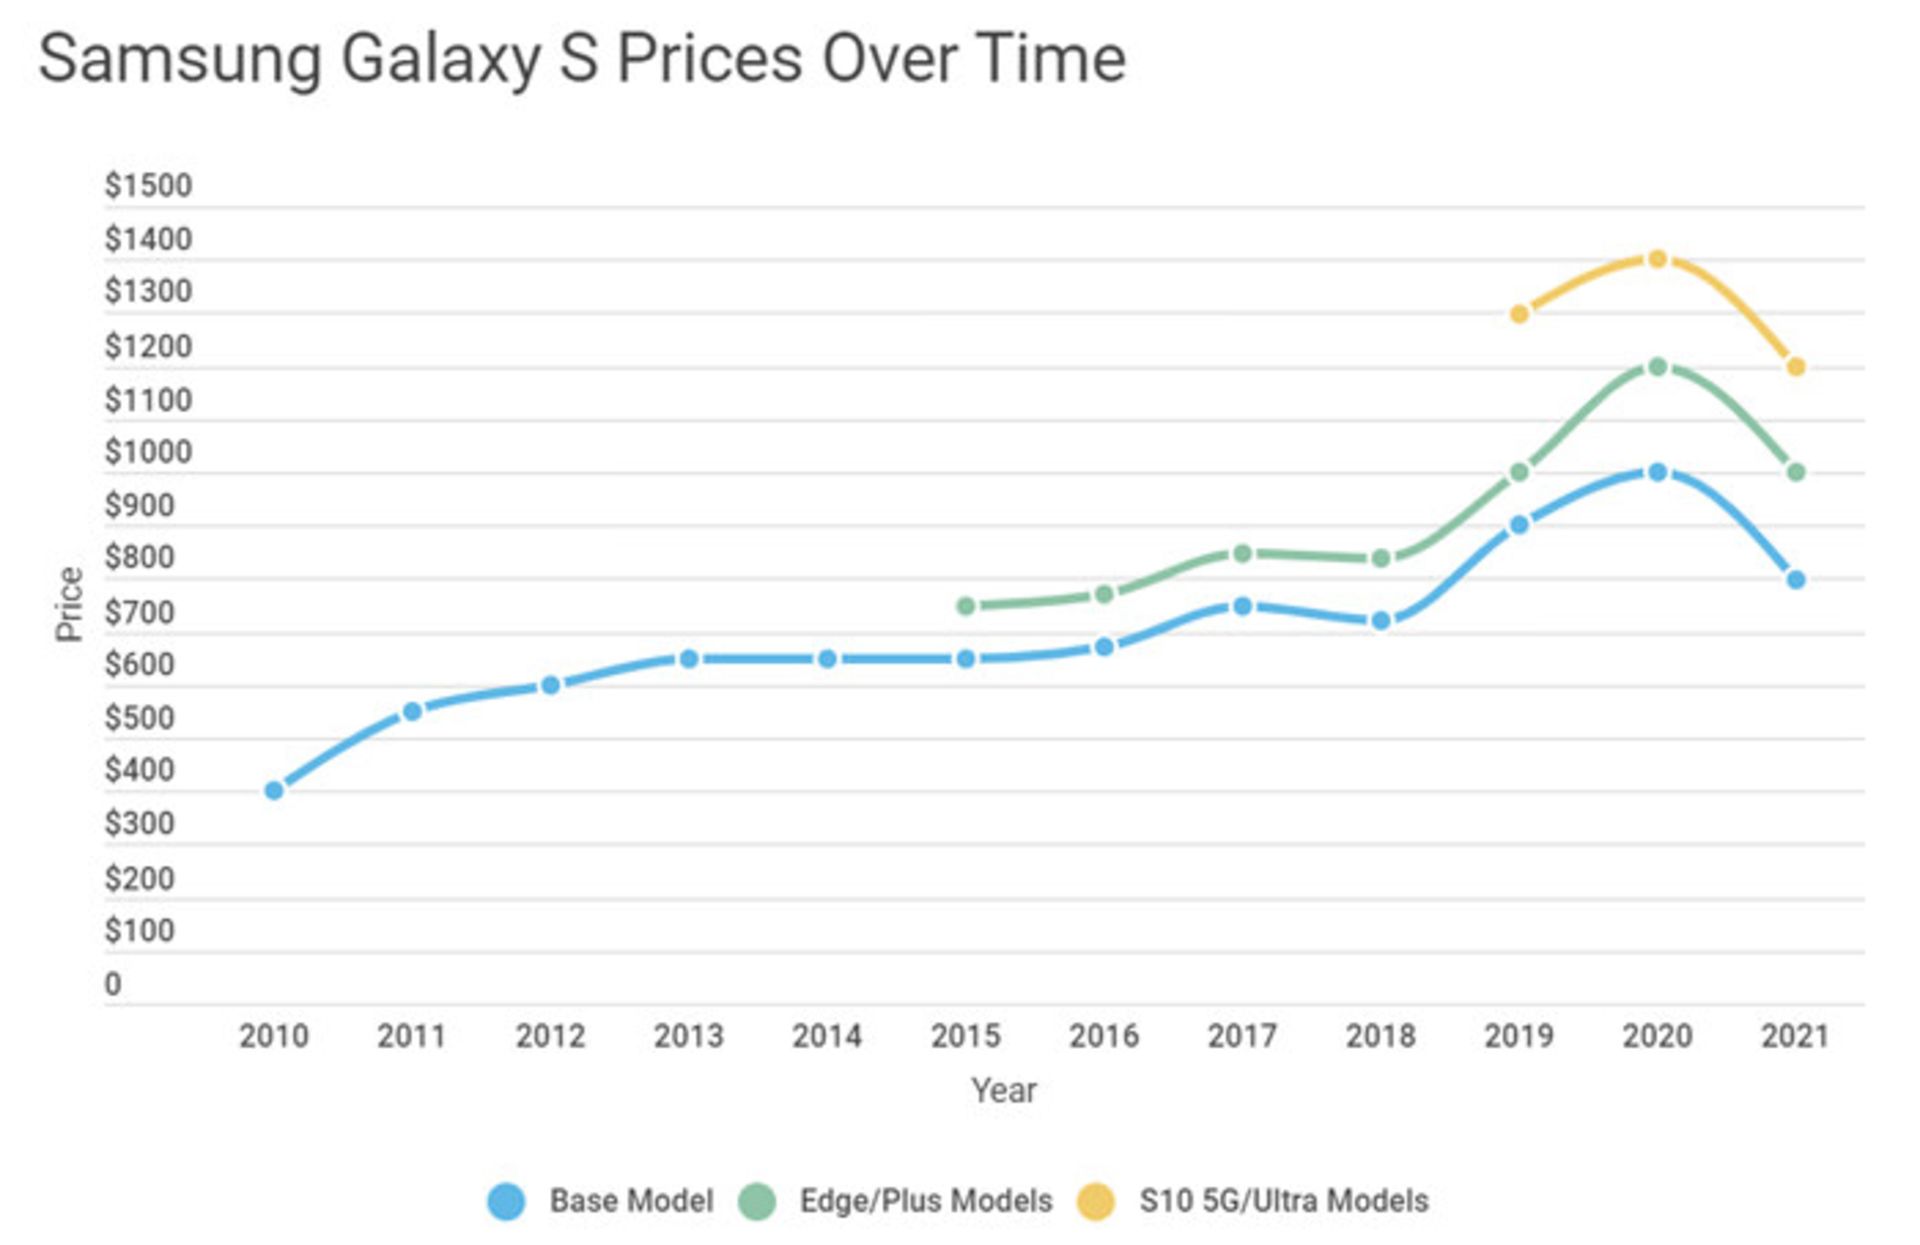 آمار مربوط به تغییر قیمت سری گلکسی اس / Galaxy S سامسونگ / Samsung در گذر زمان